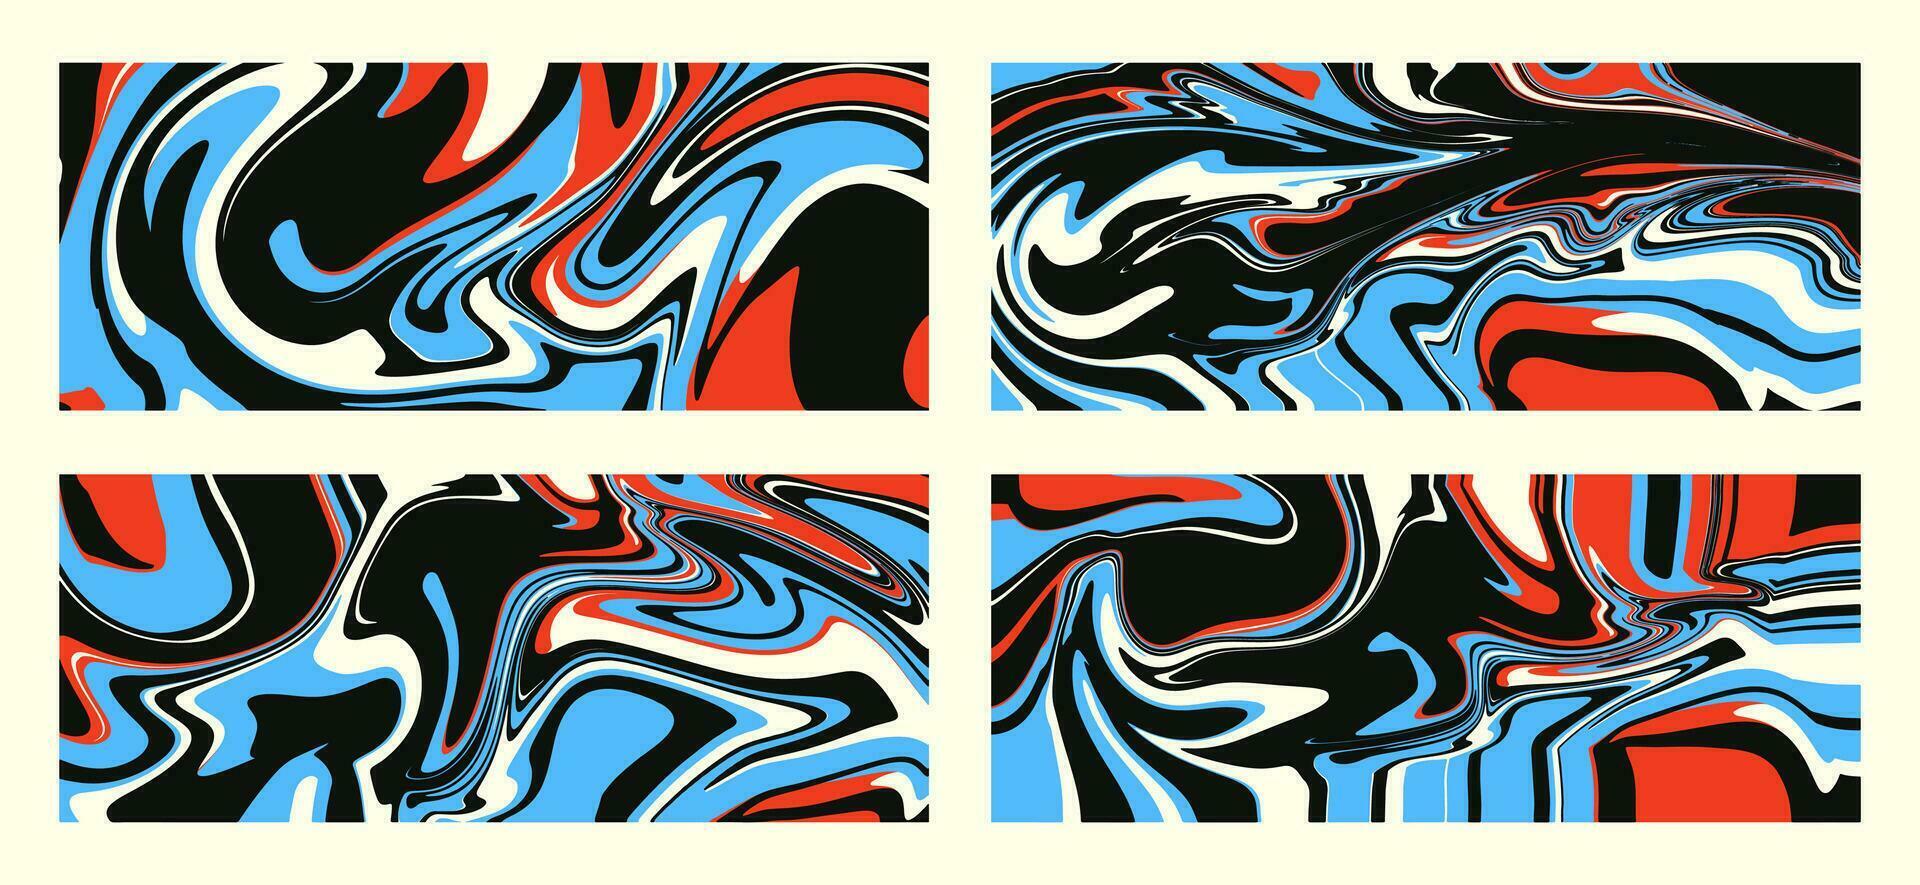 uppsättning av vågig trippy mönster i psychedelic färger. vektor abstrakt bakgrund. estetisk textur med strömmande vågor i de stil av de 1970-talet.